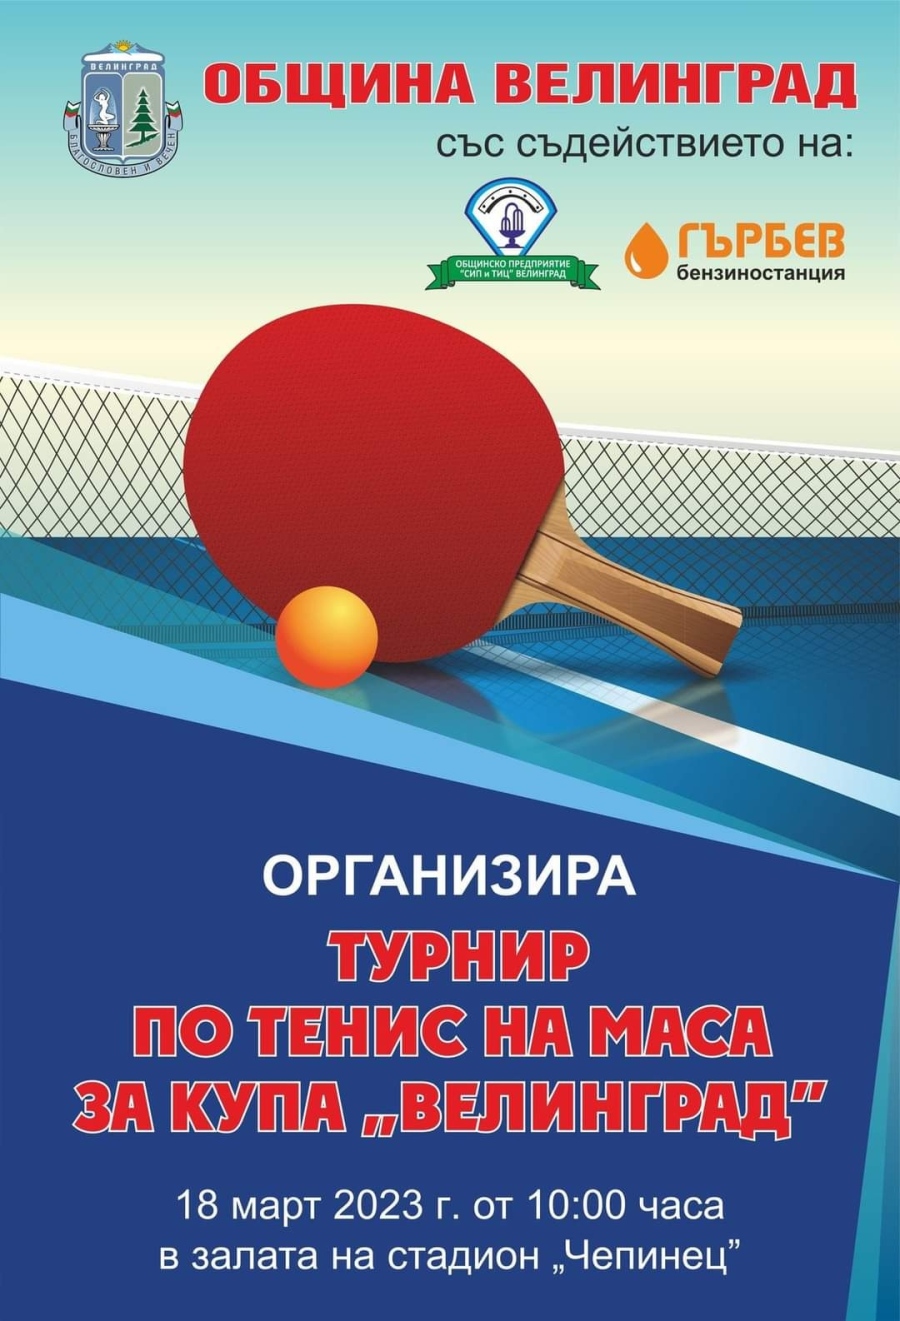 В събота стартира Първият турнир по тенис на маса за купа ”Велинград”